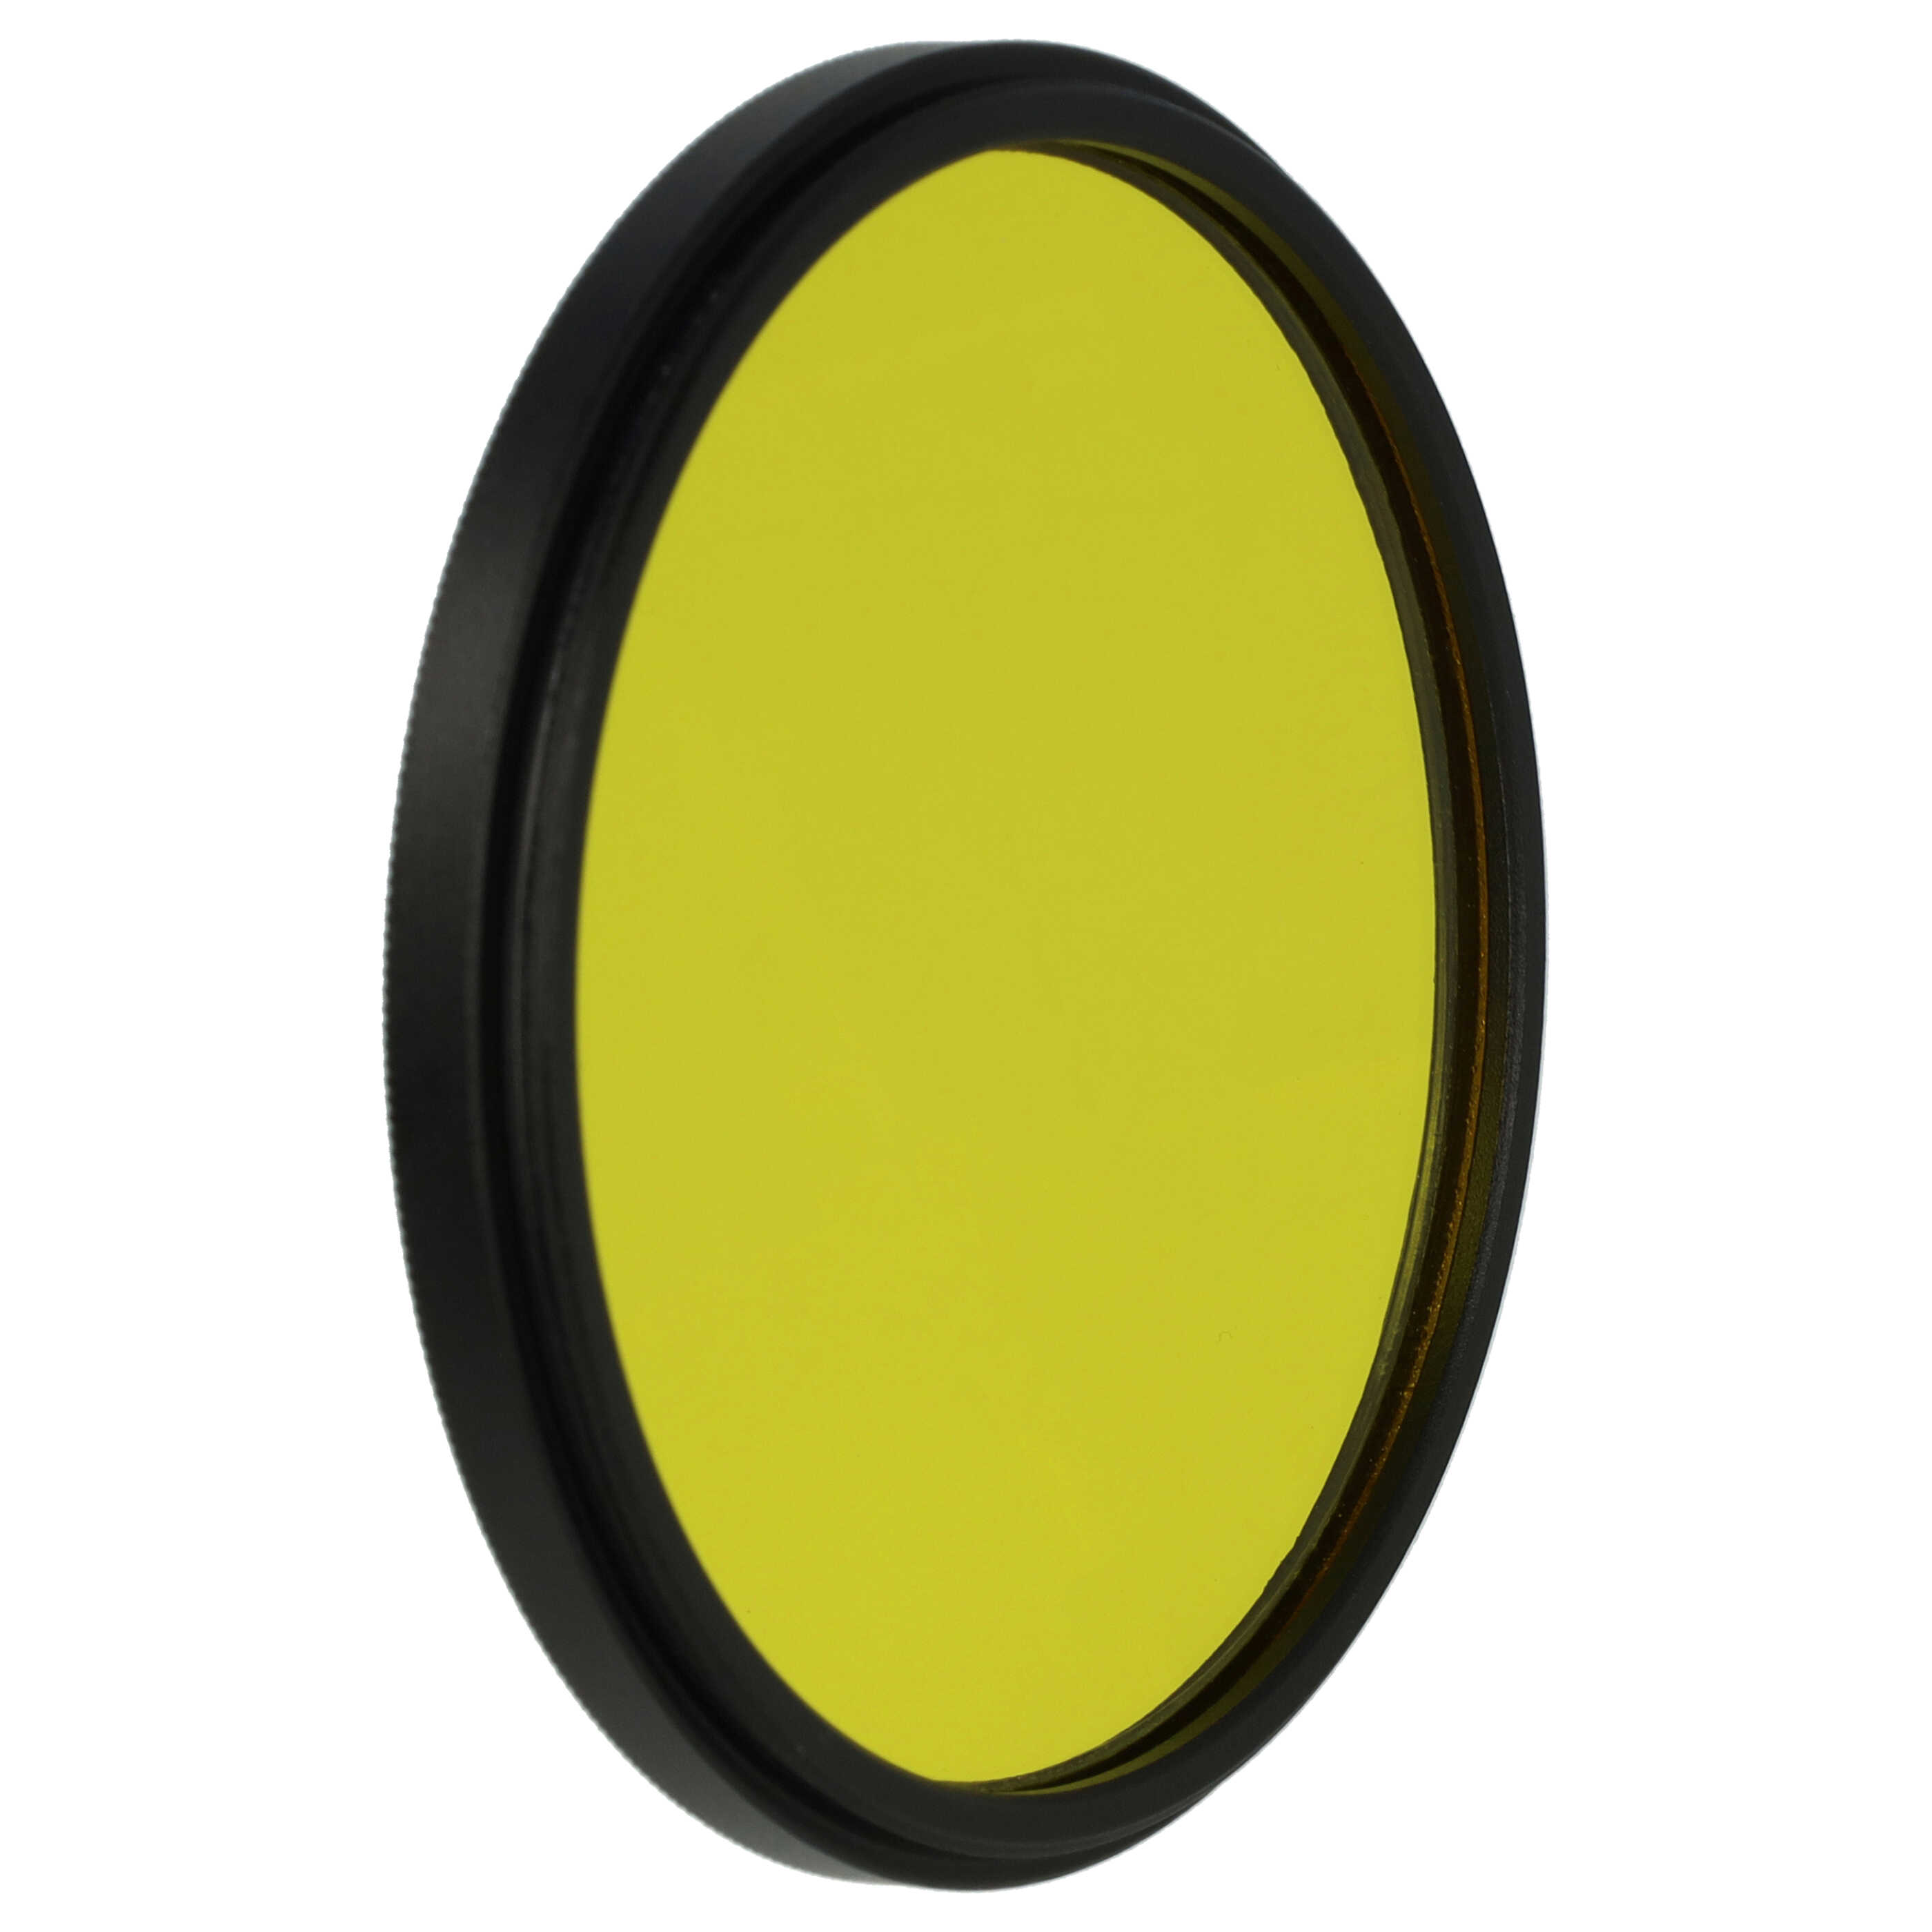 Filtre de couleur jaune pour objectifs d'appareils photo de 62 mm - Filtre jaune